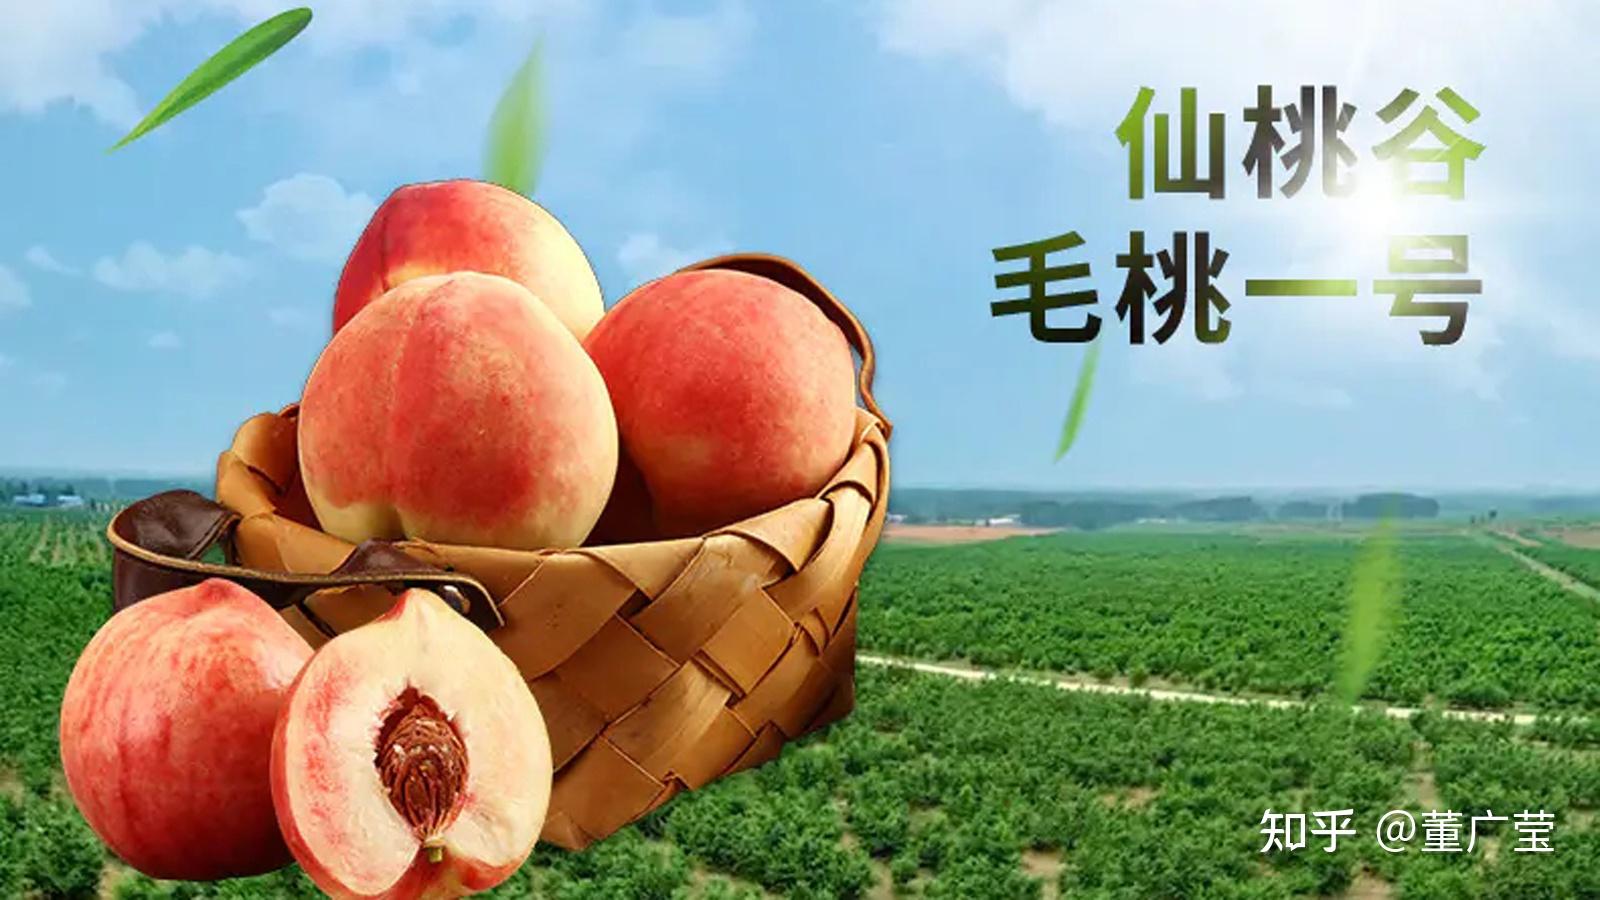 桃籽儿 的专栏:桃籽儿抱个大桃子_晋江文学城|晋江原创网